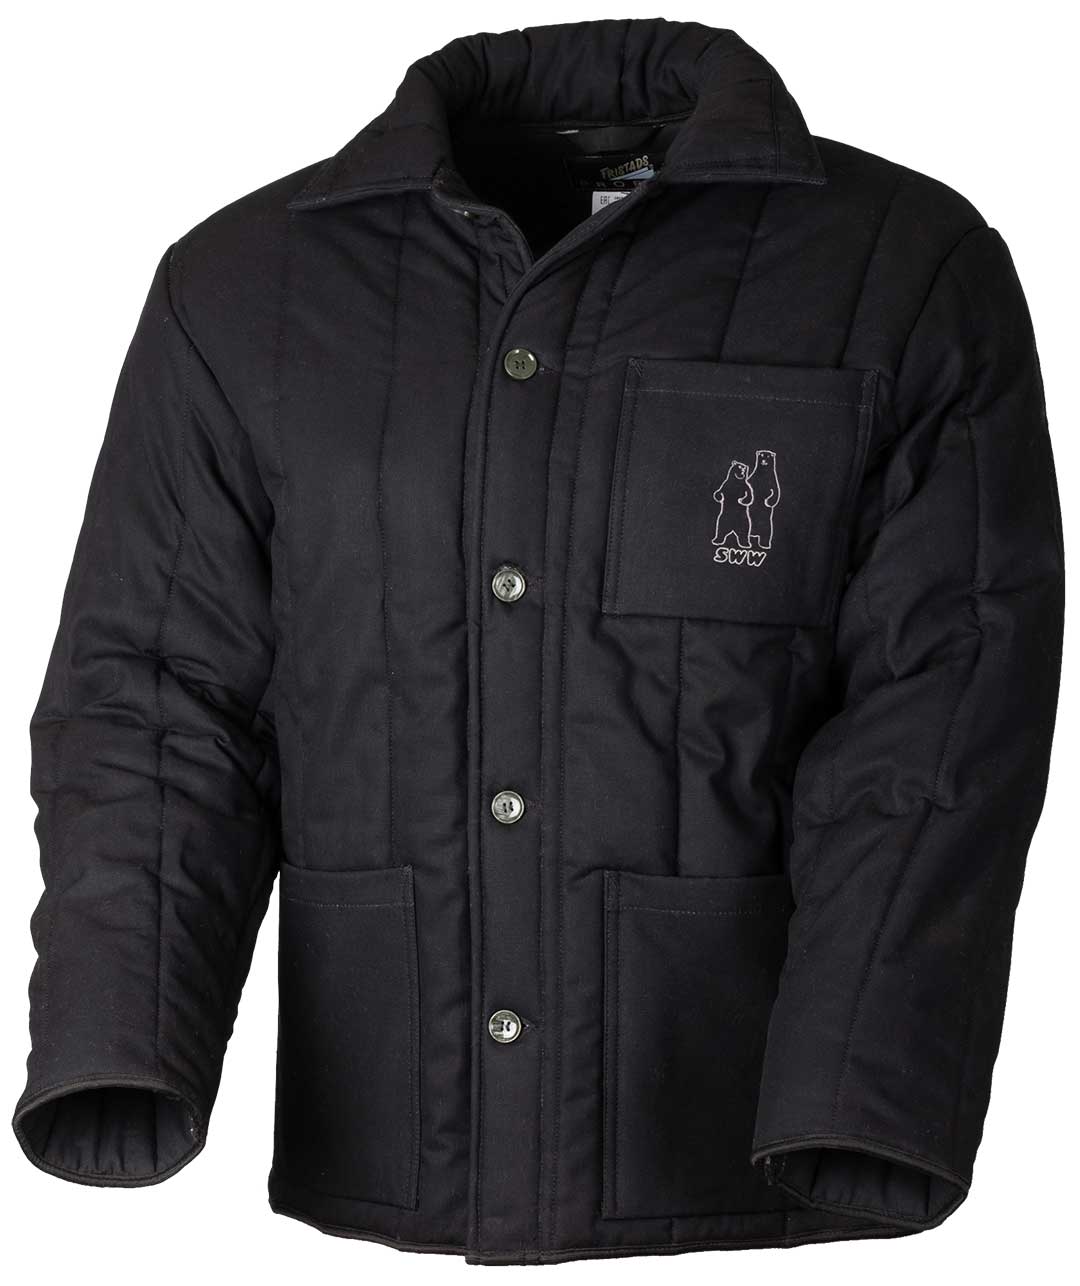 Куртка 633-XB-90 SWW купить оптом и в розницу в интернет-магазине tis-tex.ru — 1